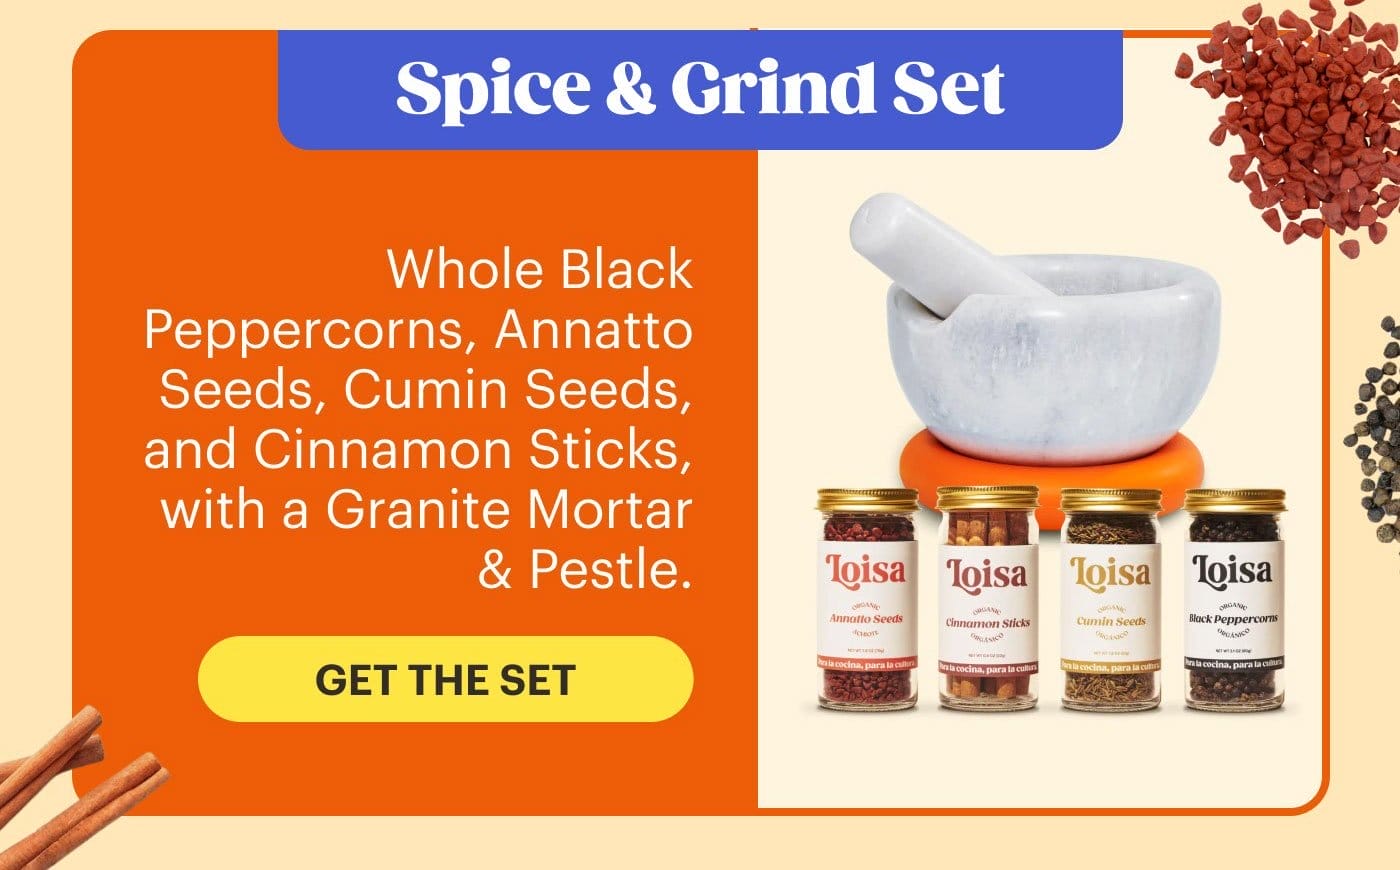 Spice & Grind Set GET THE SET